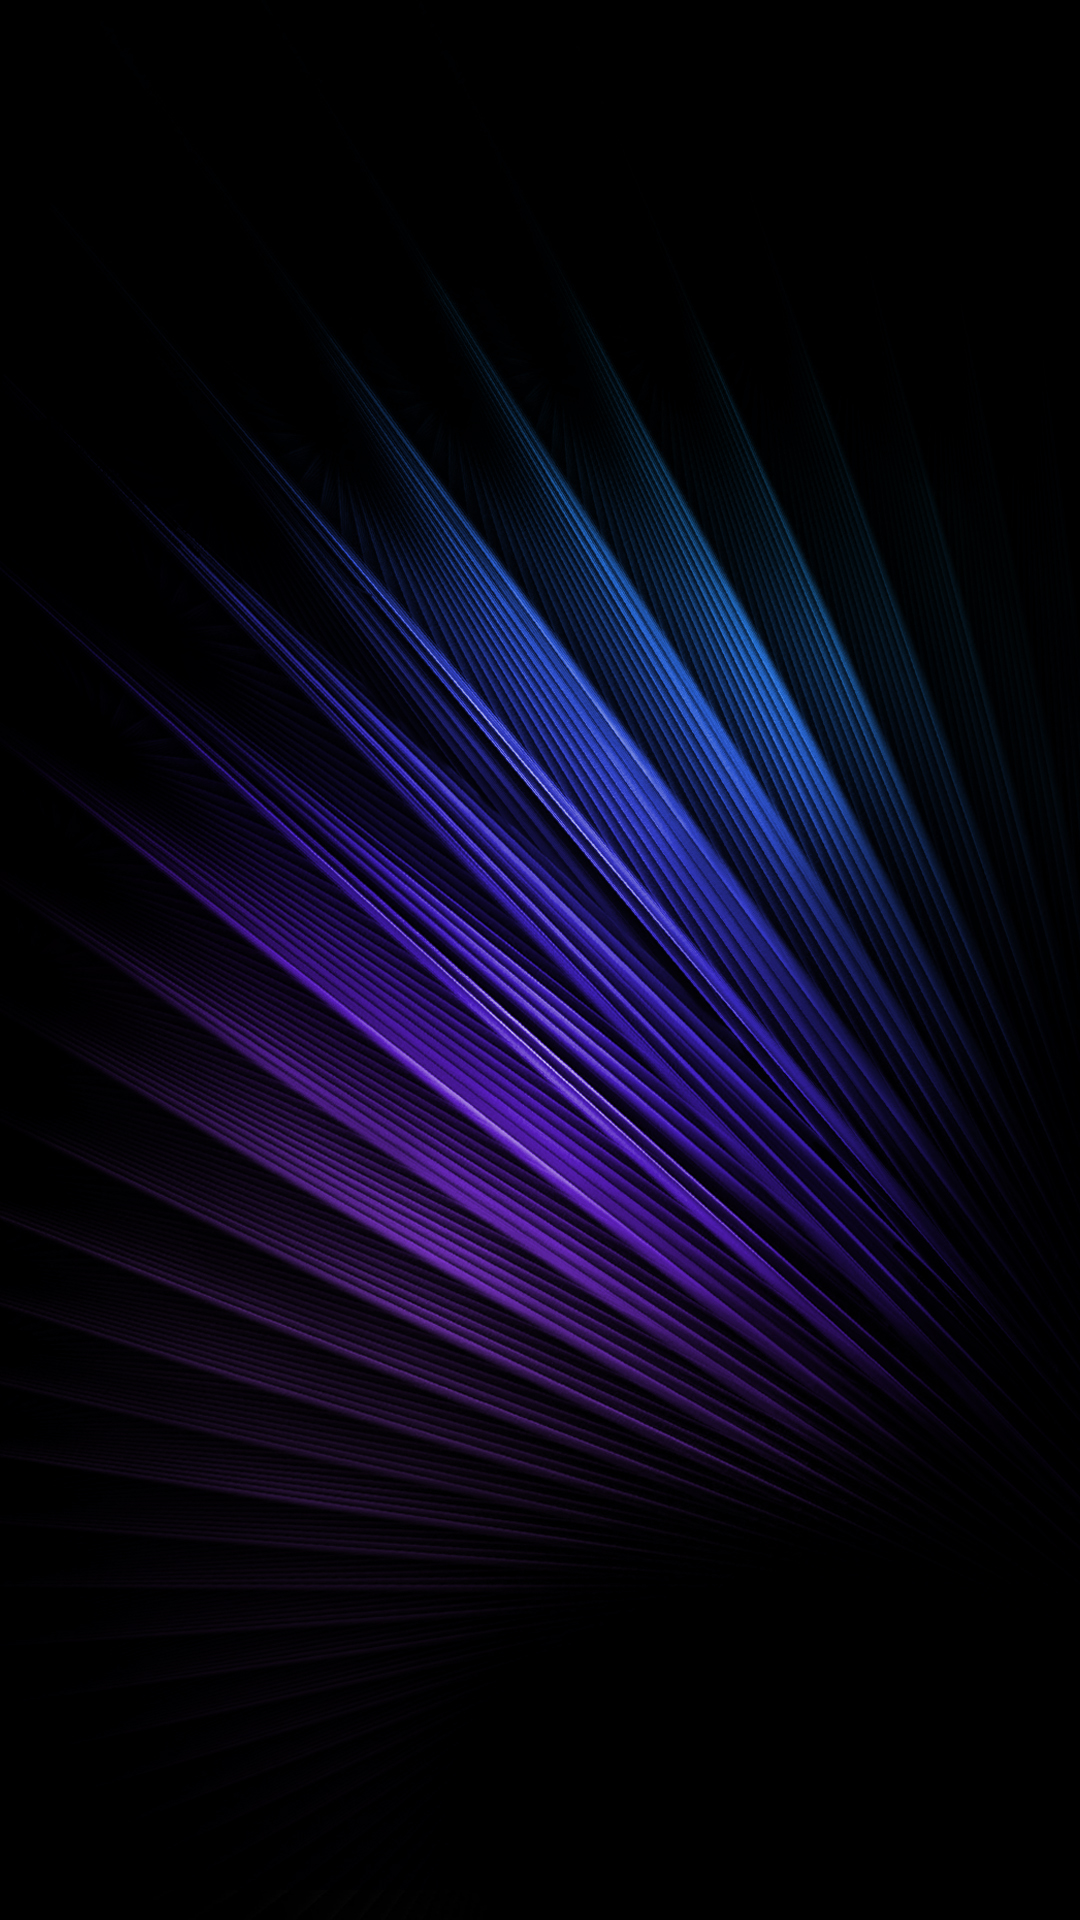 ilusión óptica fondo de pantalla para iphone,azul,negro,violeta,púrpura,azul eléctrico